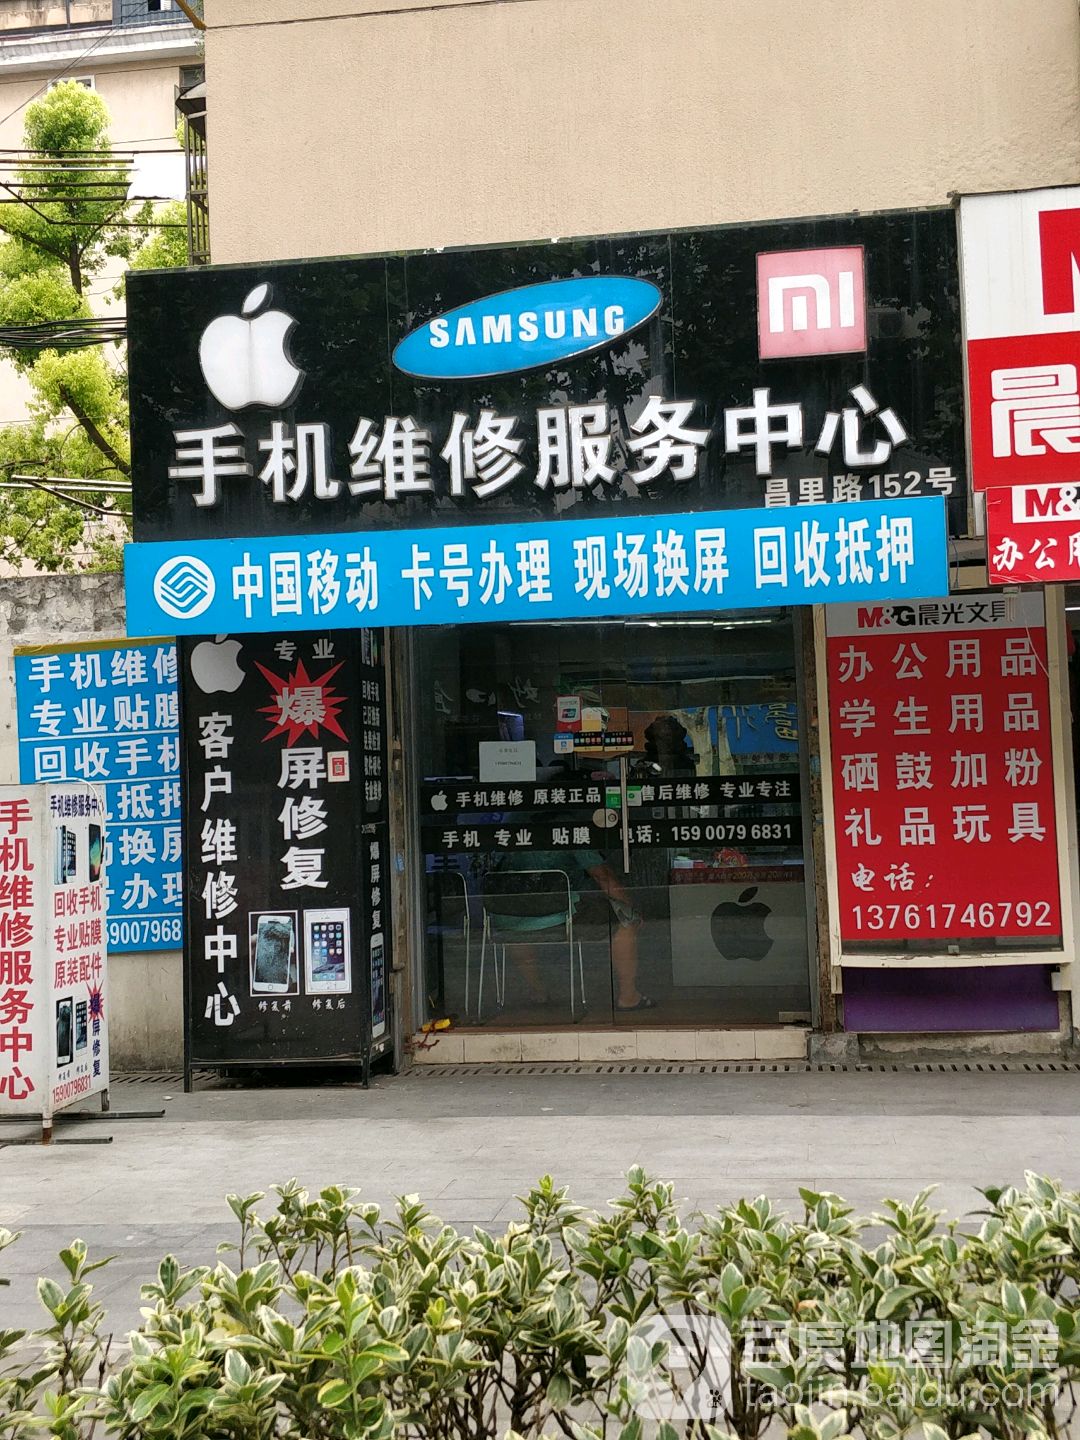 手机维修服务中心昌里路店